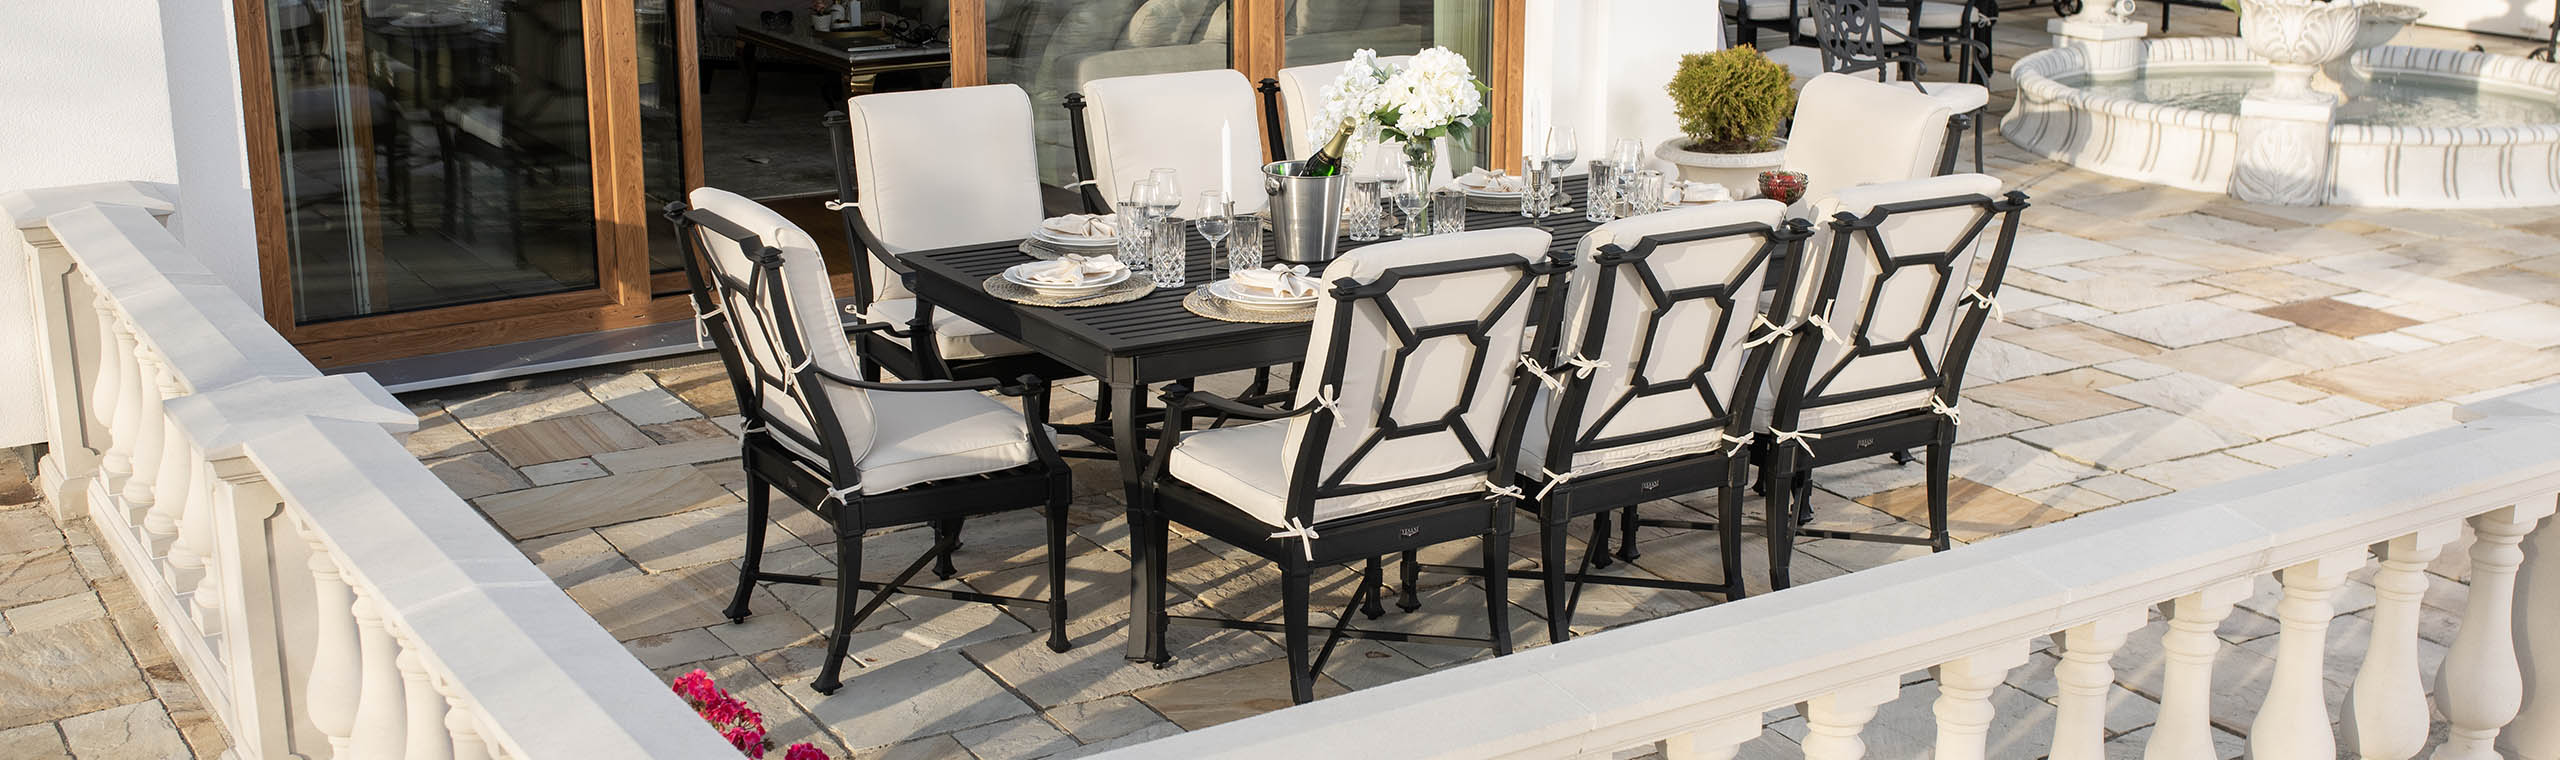 Exklusiv gjuten matgrupp utomhus 8 stolar svart aluminium - St Tropez